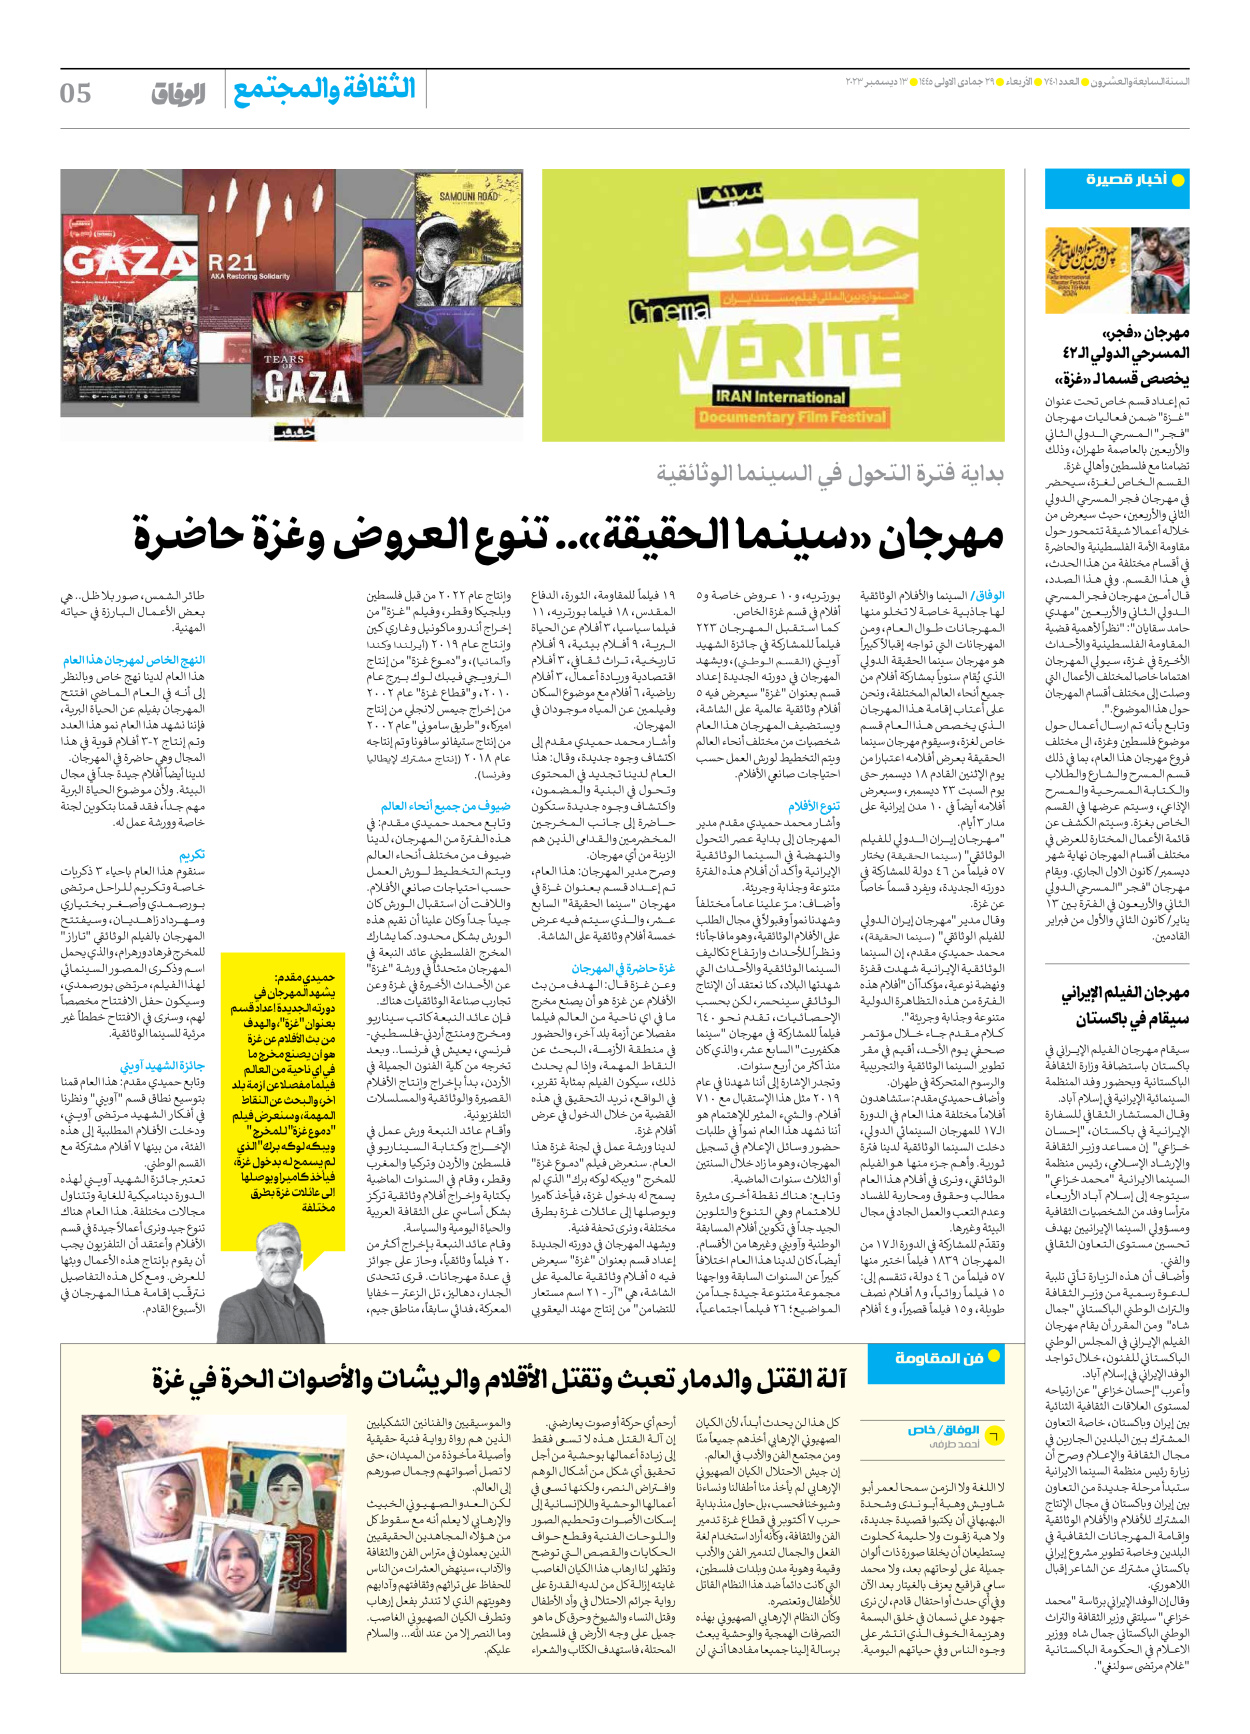 صحیفة ایران الدولیة الوفاق - العدد سبعة آلاف وأربعمائة وواحد - ١٣ ديسمبر ٢٠٢٣ - الصفحة ٥